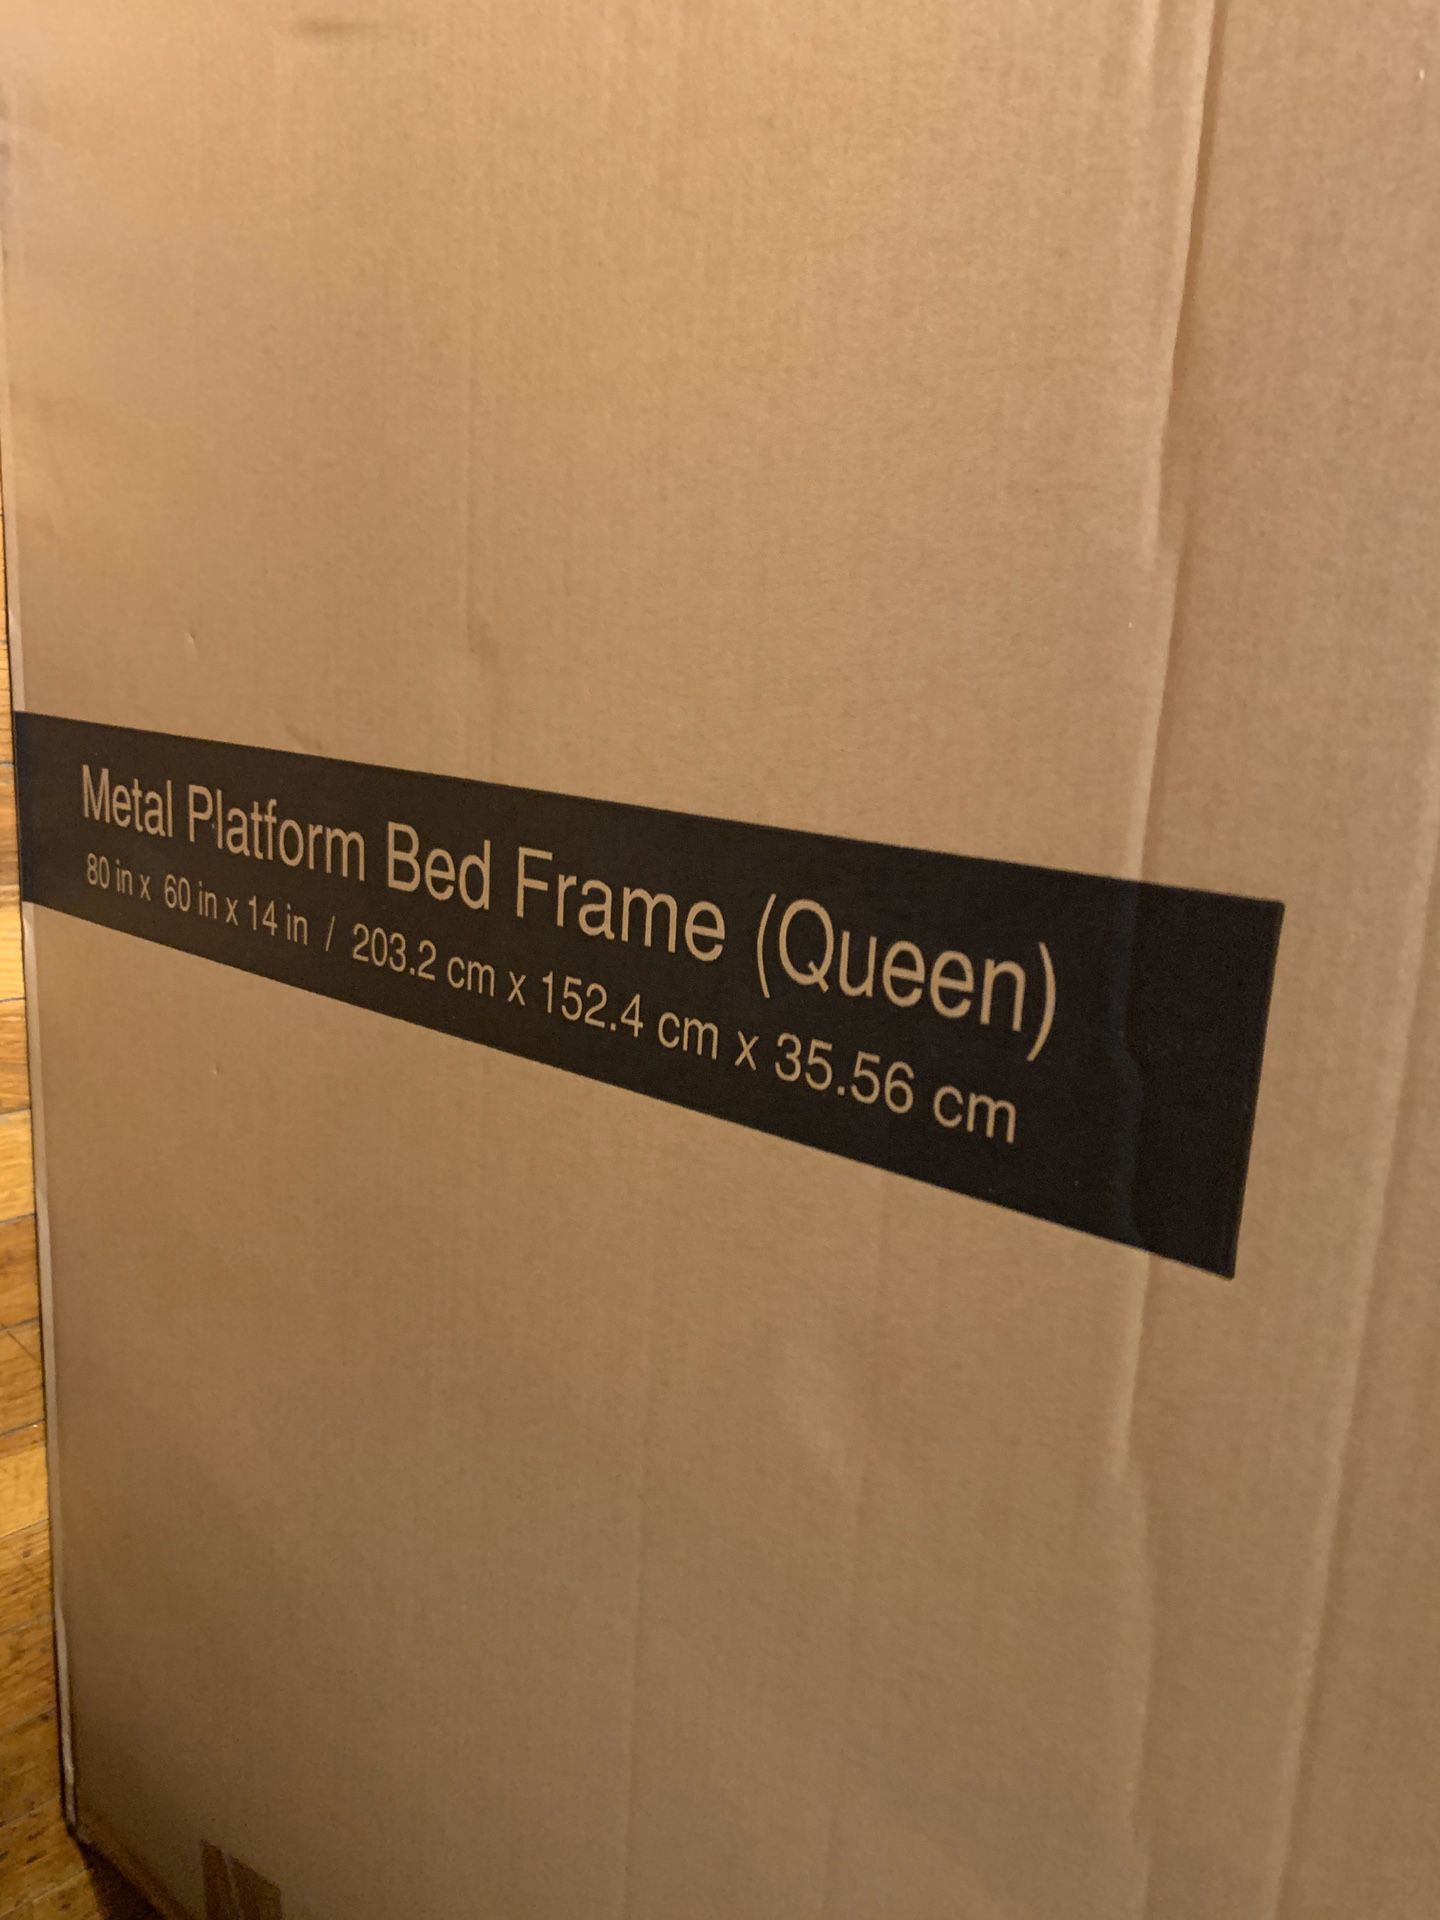 Metal platform bed frame queen